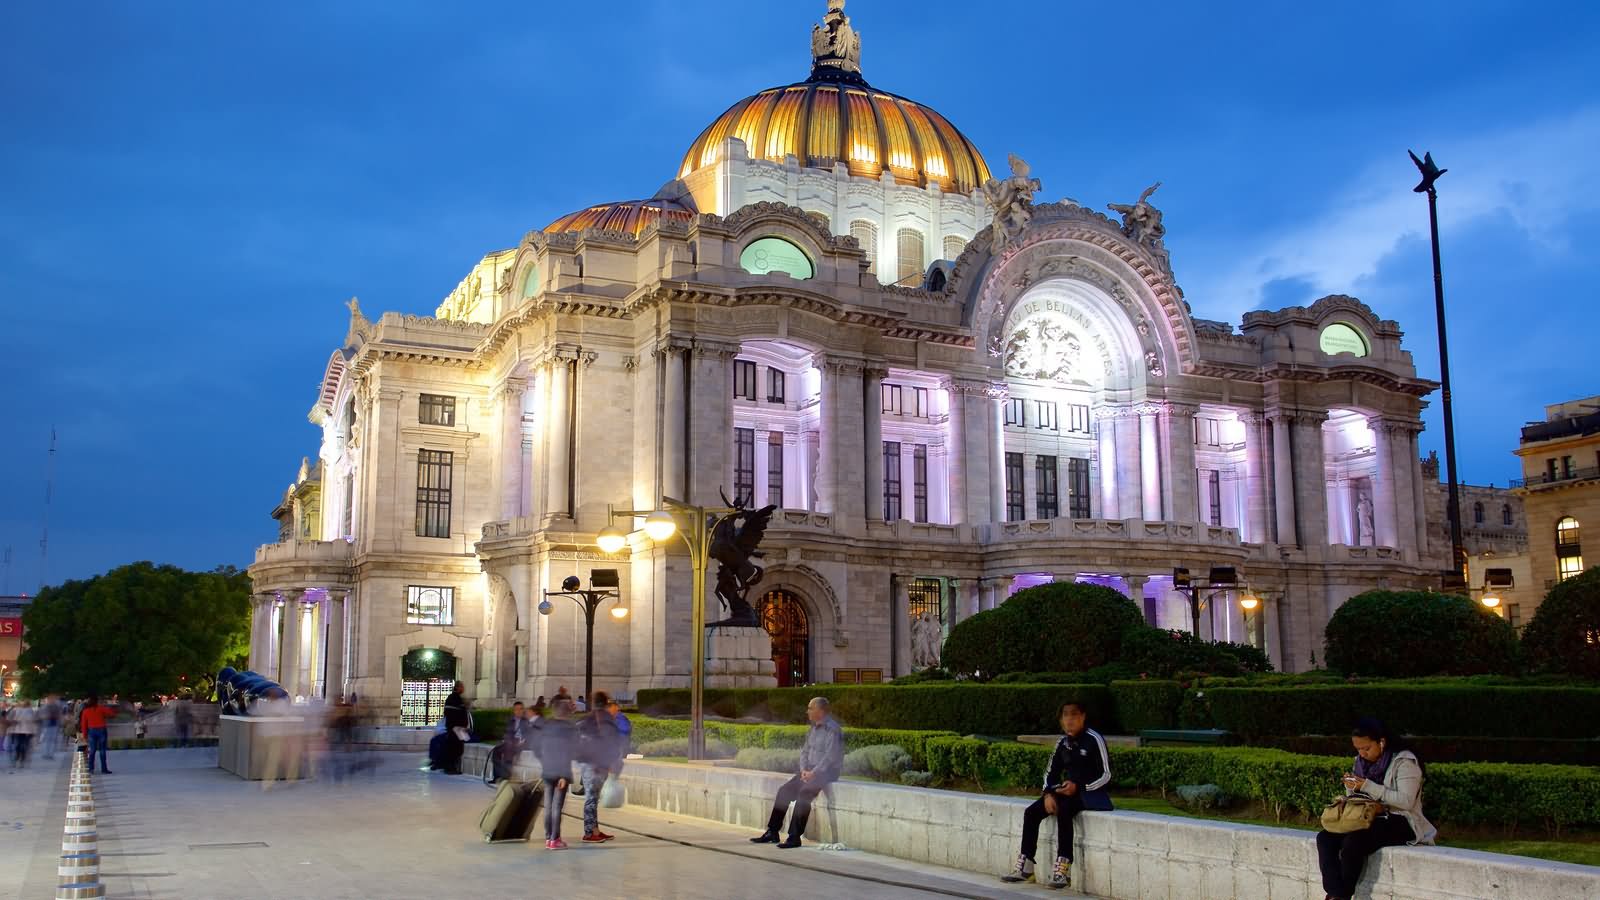 The Palacio de Bellas Artes Lit Up At Night